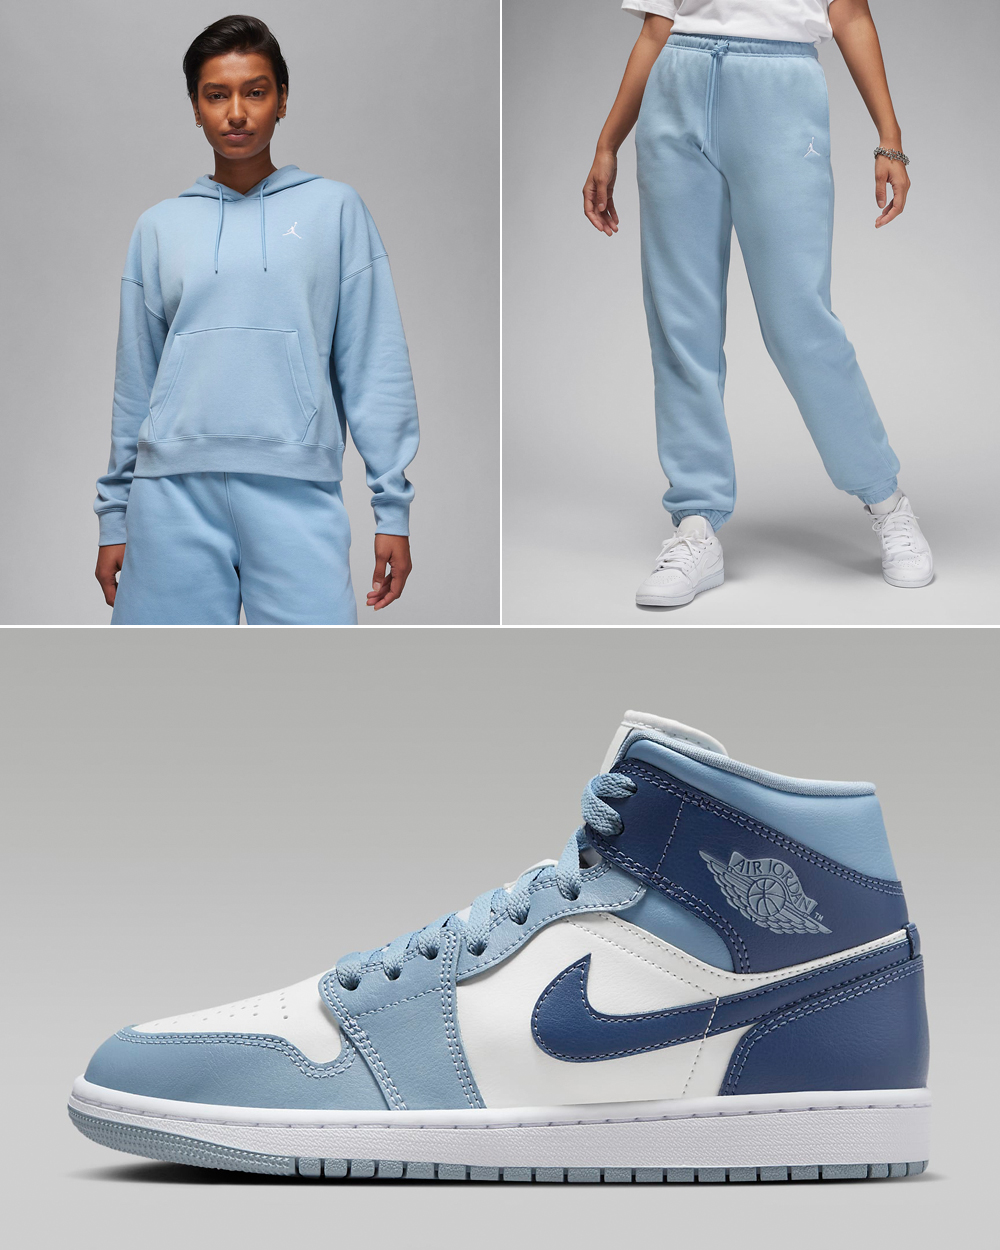 Air-Jordan-1-Mid-Womens-Blue-Grey-Diffused-Blue-Hoodie-Pants-Outfit